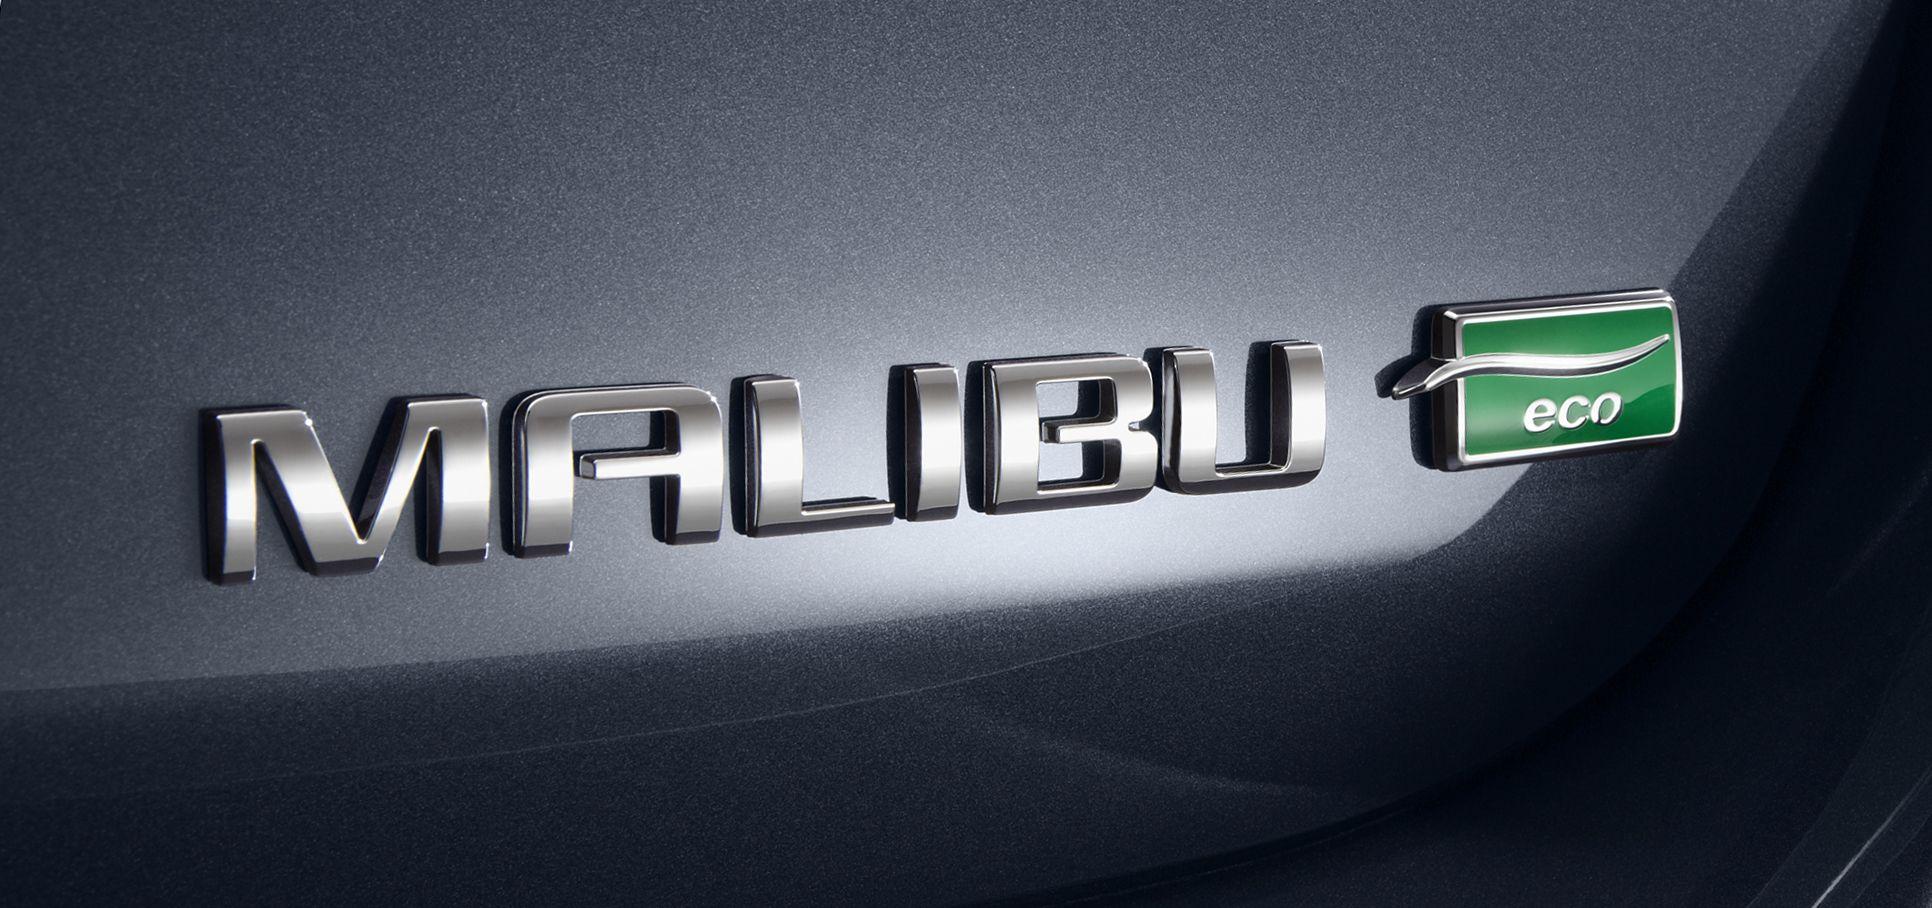 Chevrolet Malibu Logo - Chevrolet Malibu ECO : 2013